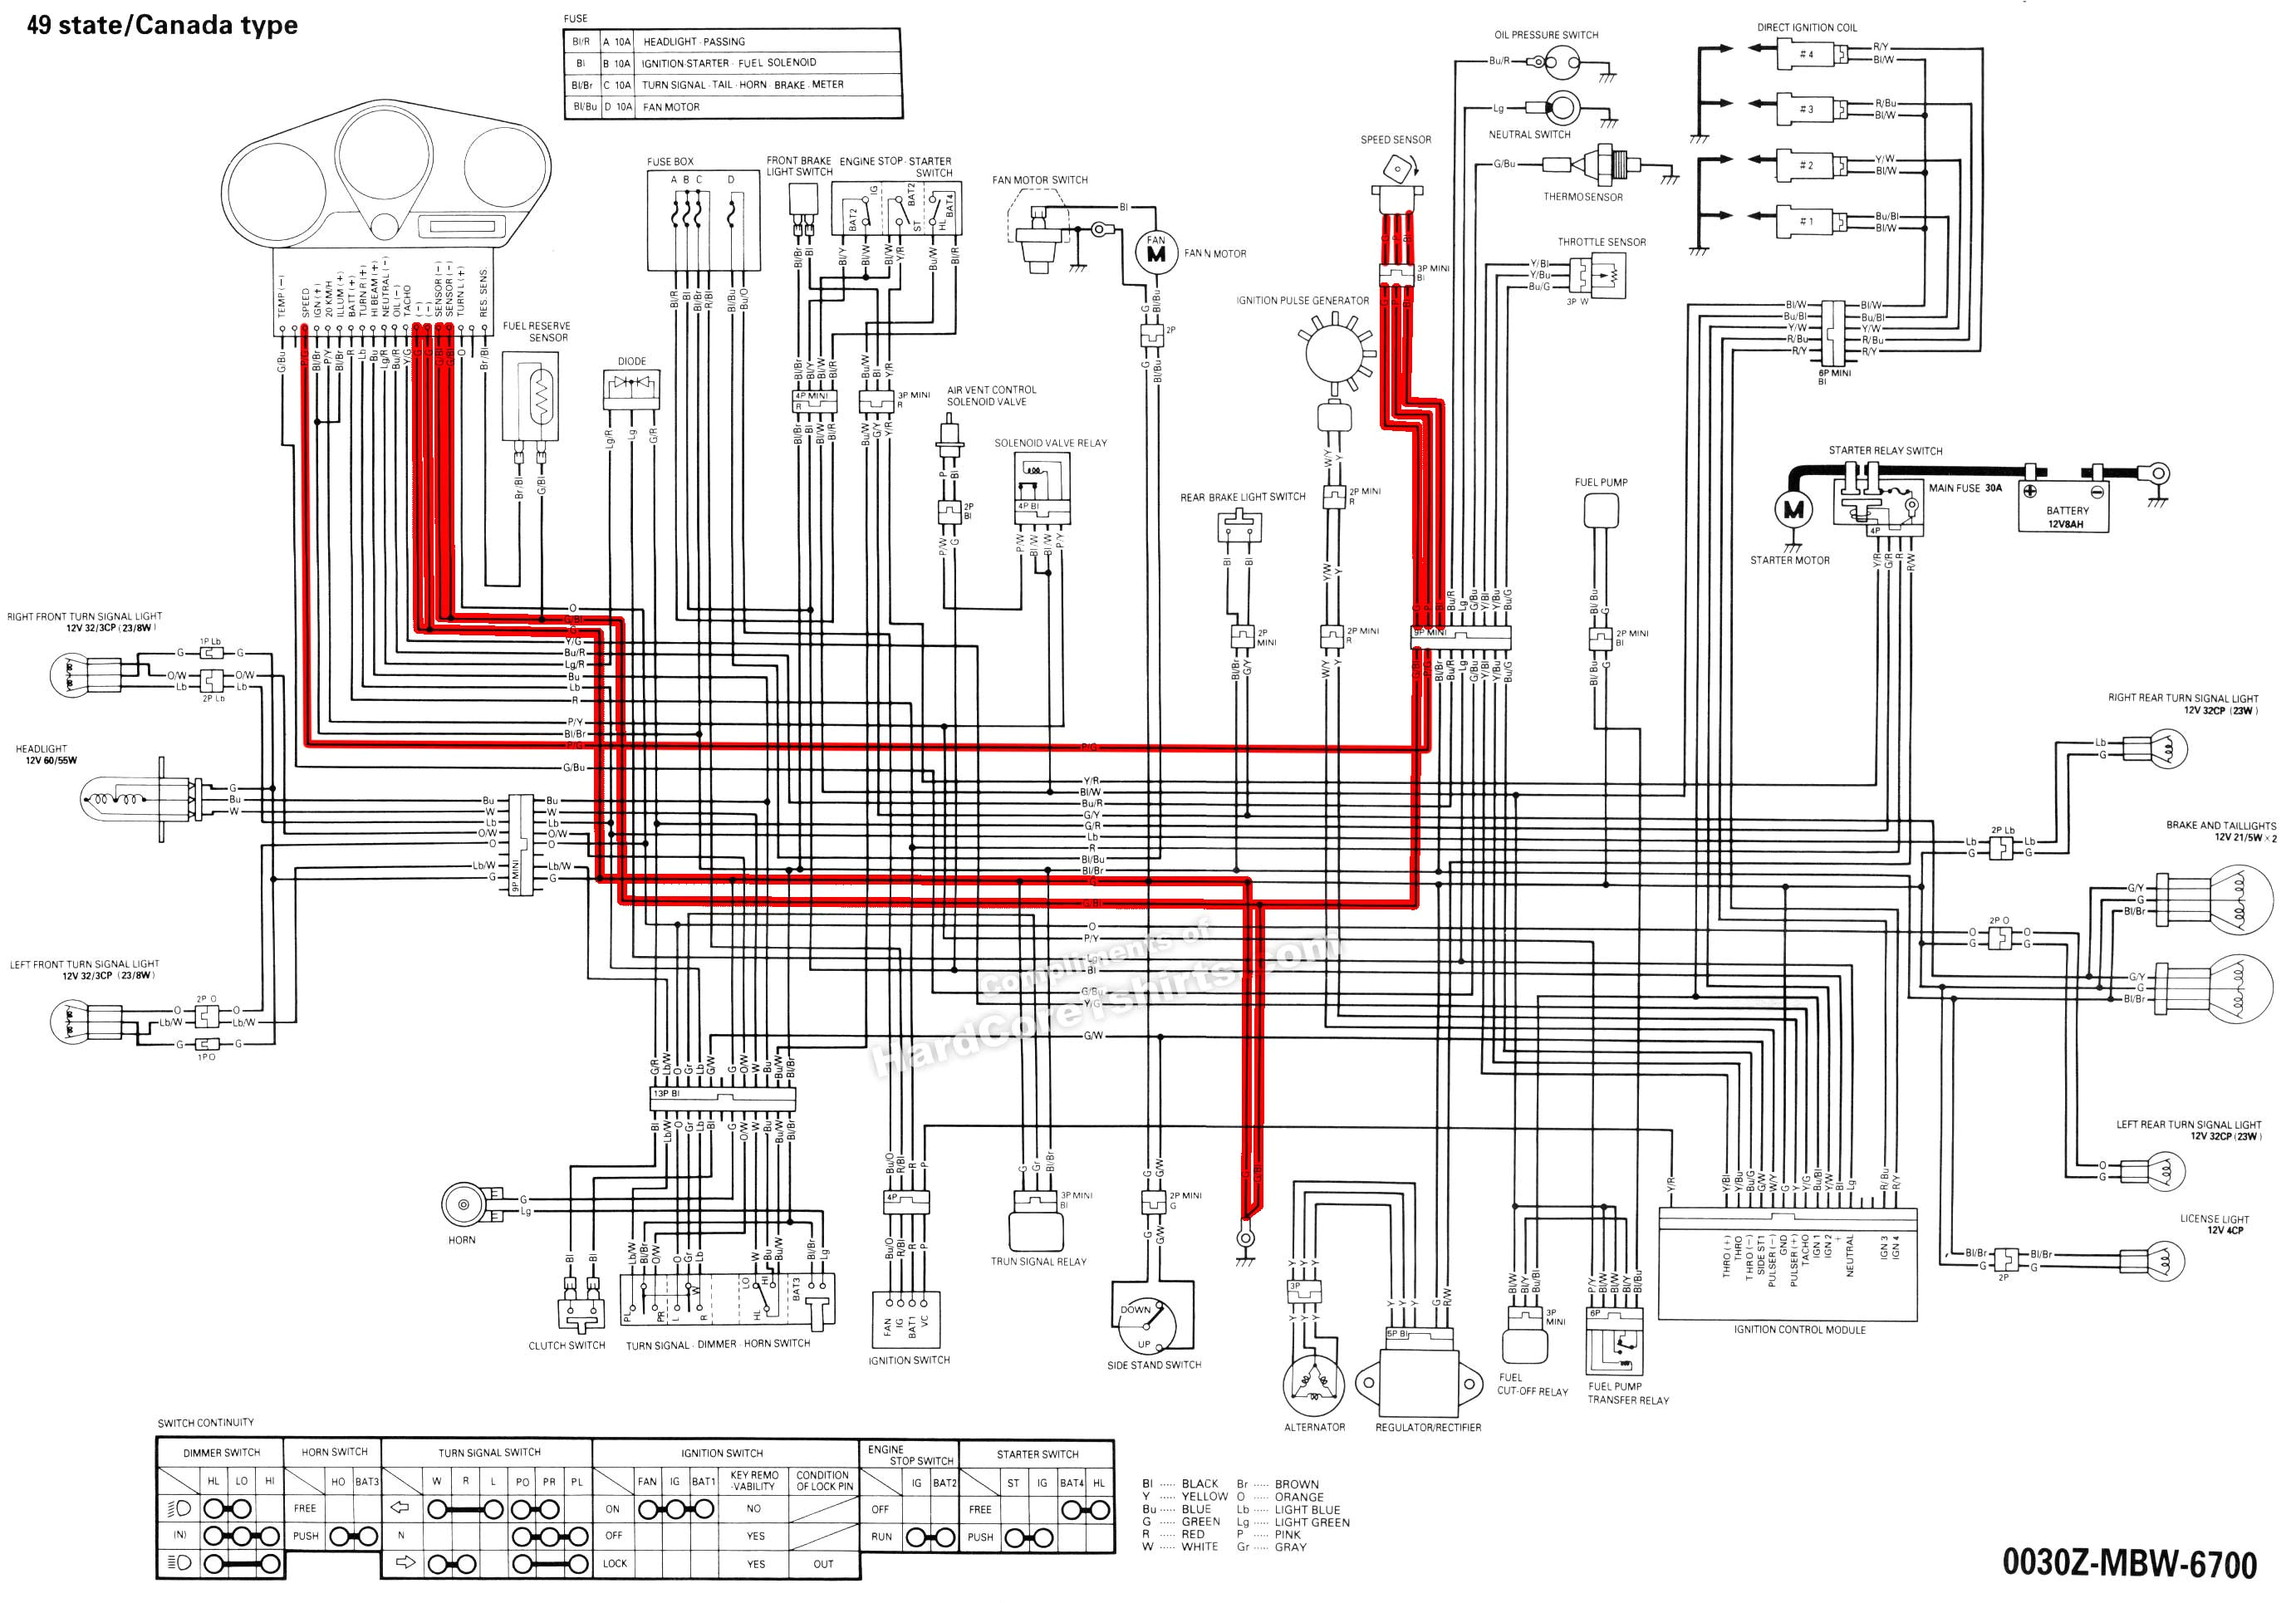 cbr wiring diagram wiring diagram amecbr 1000 wiring diagram my wiring diagram cbr wiring diagram cbr